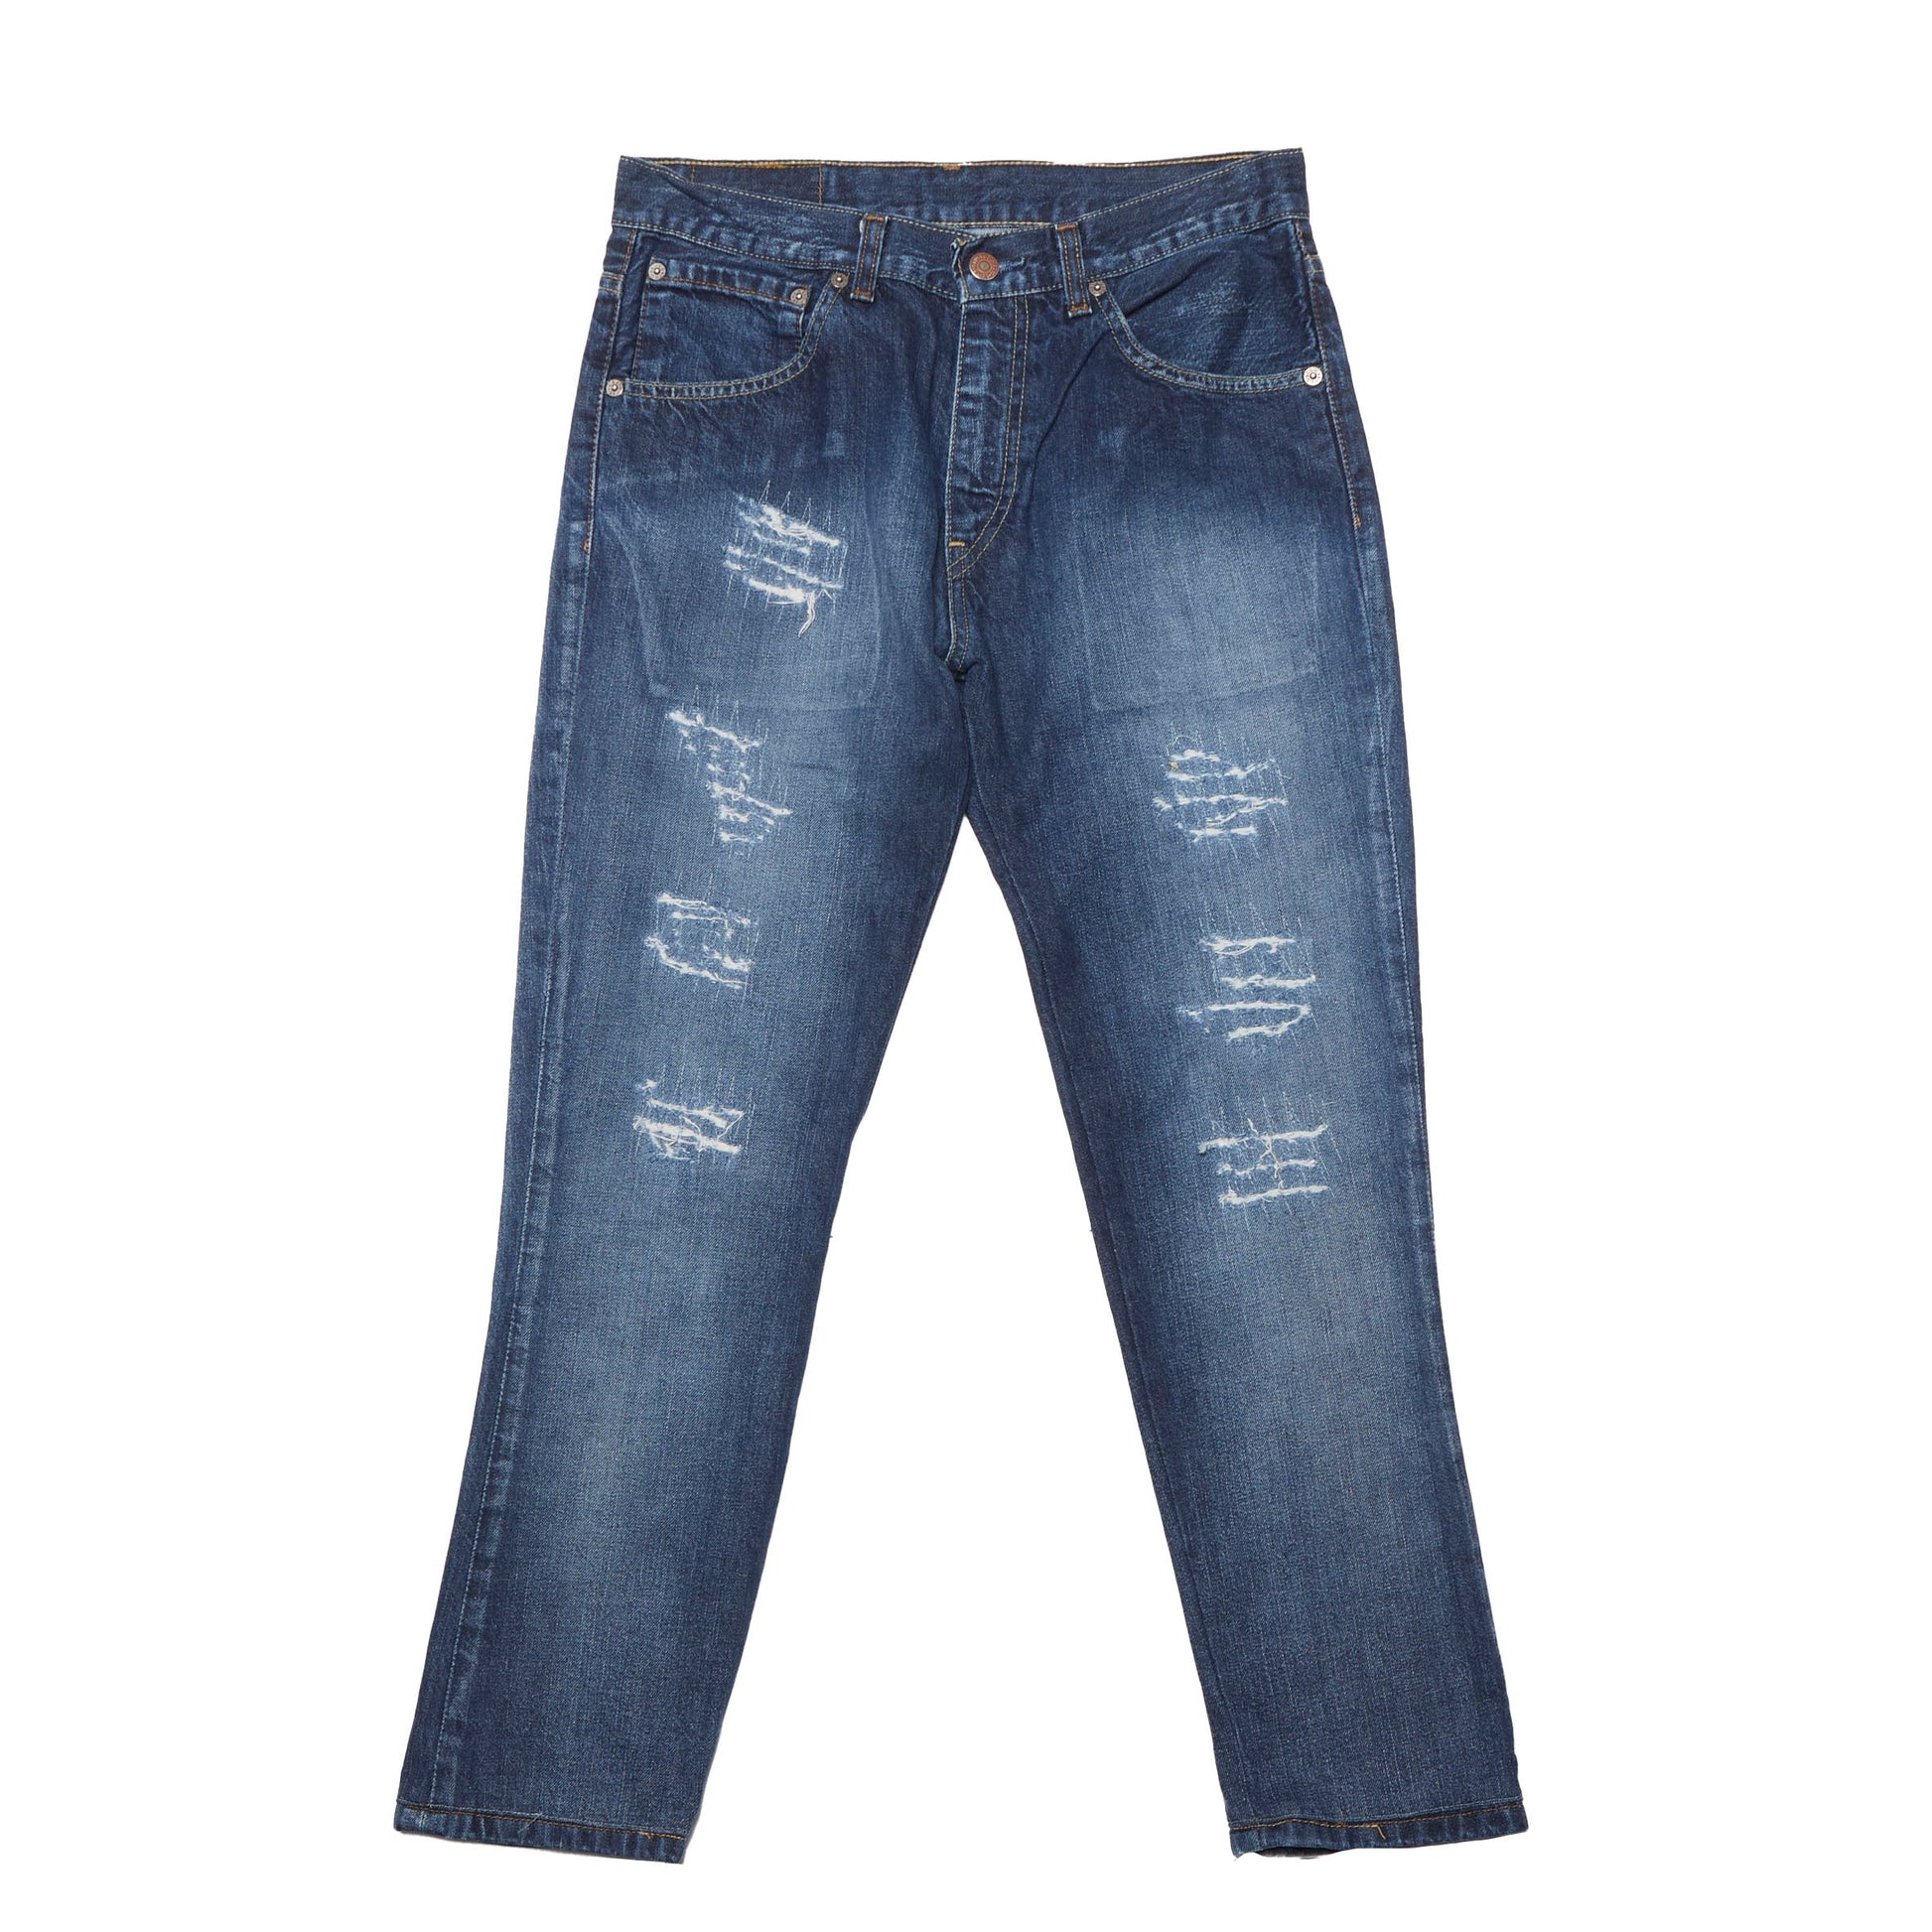 Womens Levis Slim Fit Denim Jeans - W30" L28"